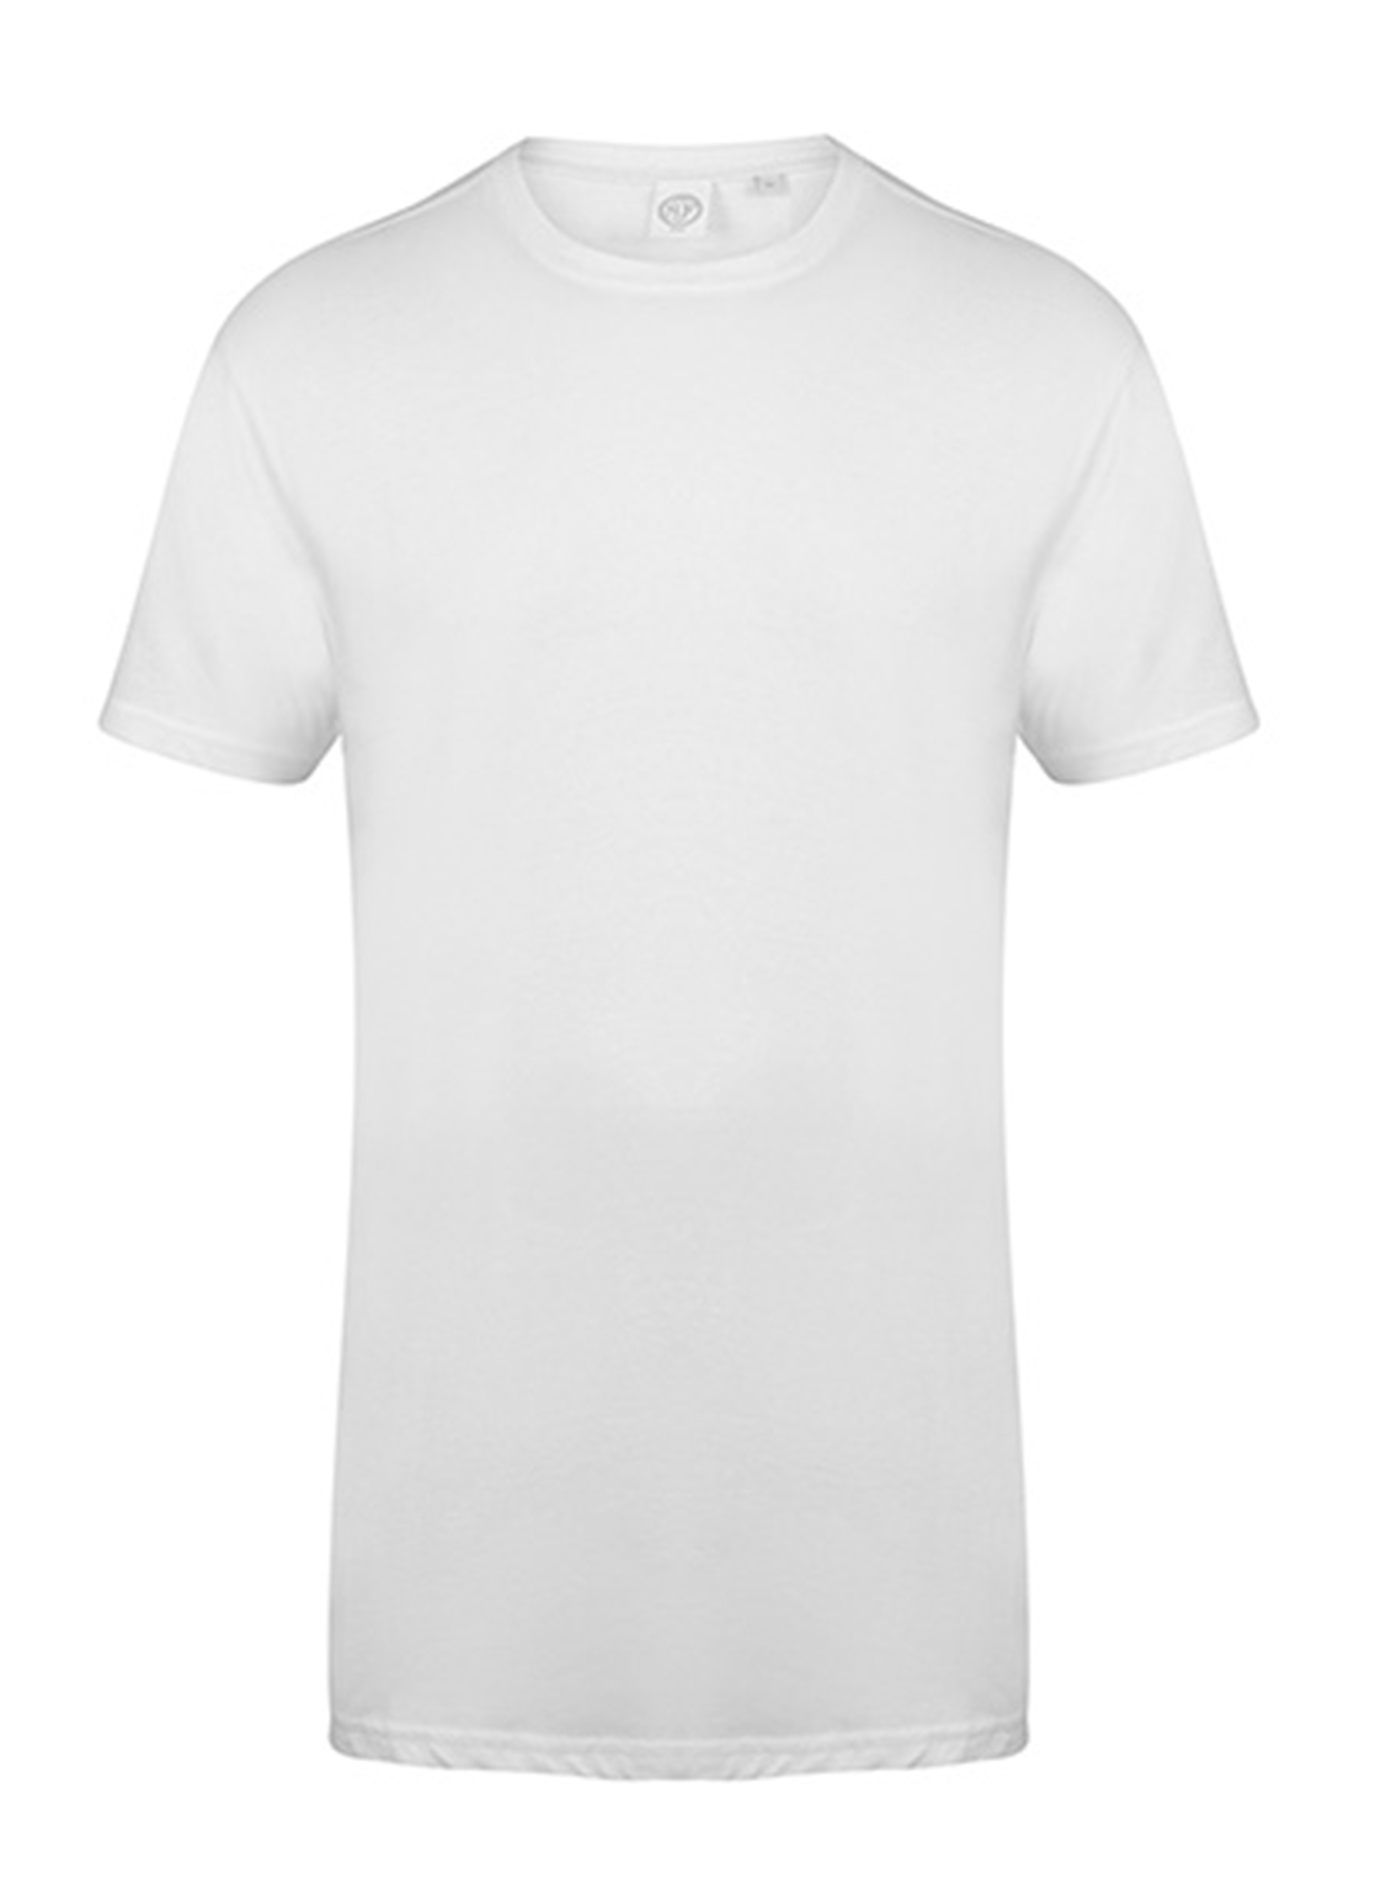 Pánské tričko s prodlouženým zadním dílem Skinnifit Longline T - Bílá L